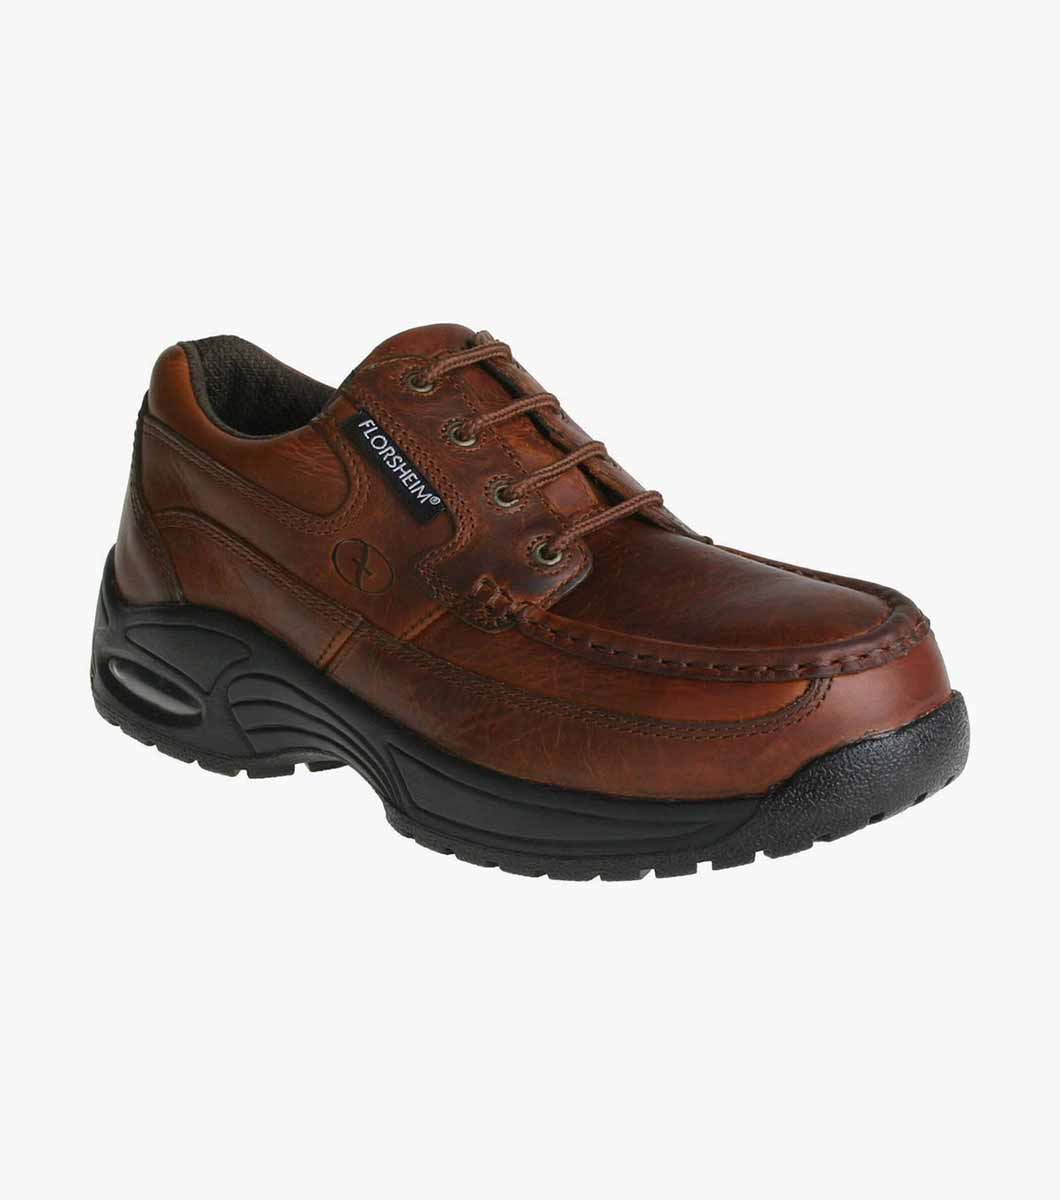 florsheim slip resistant shoes